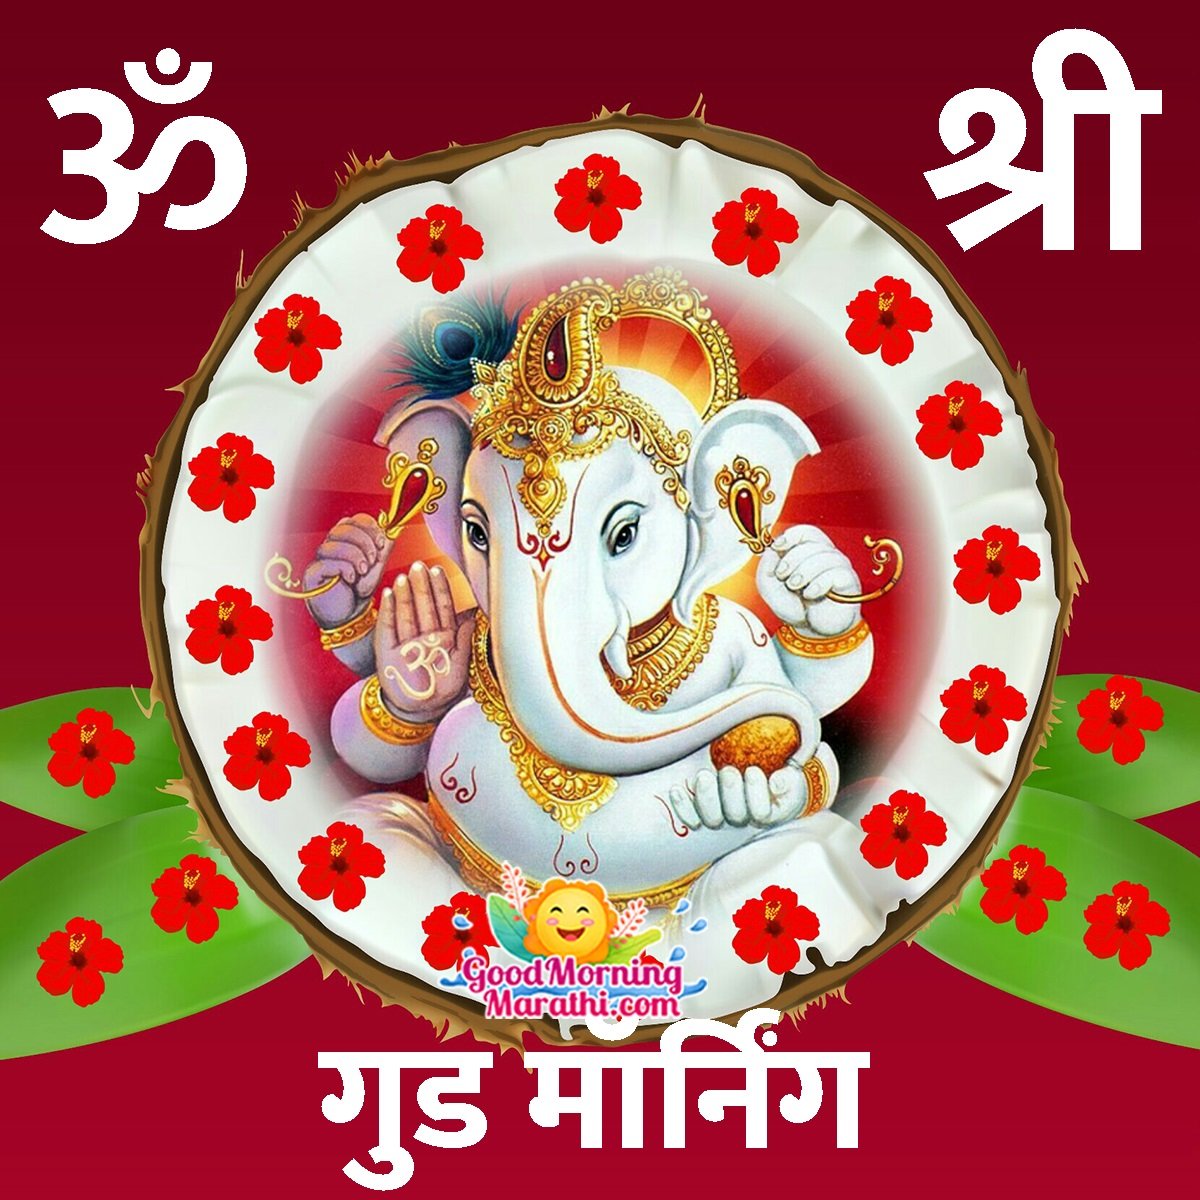 Good Morning Ganesha Marathi Images - Good Morning Wishes & Images In  Marathi